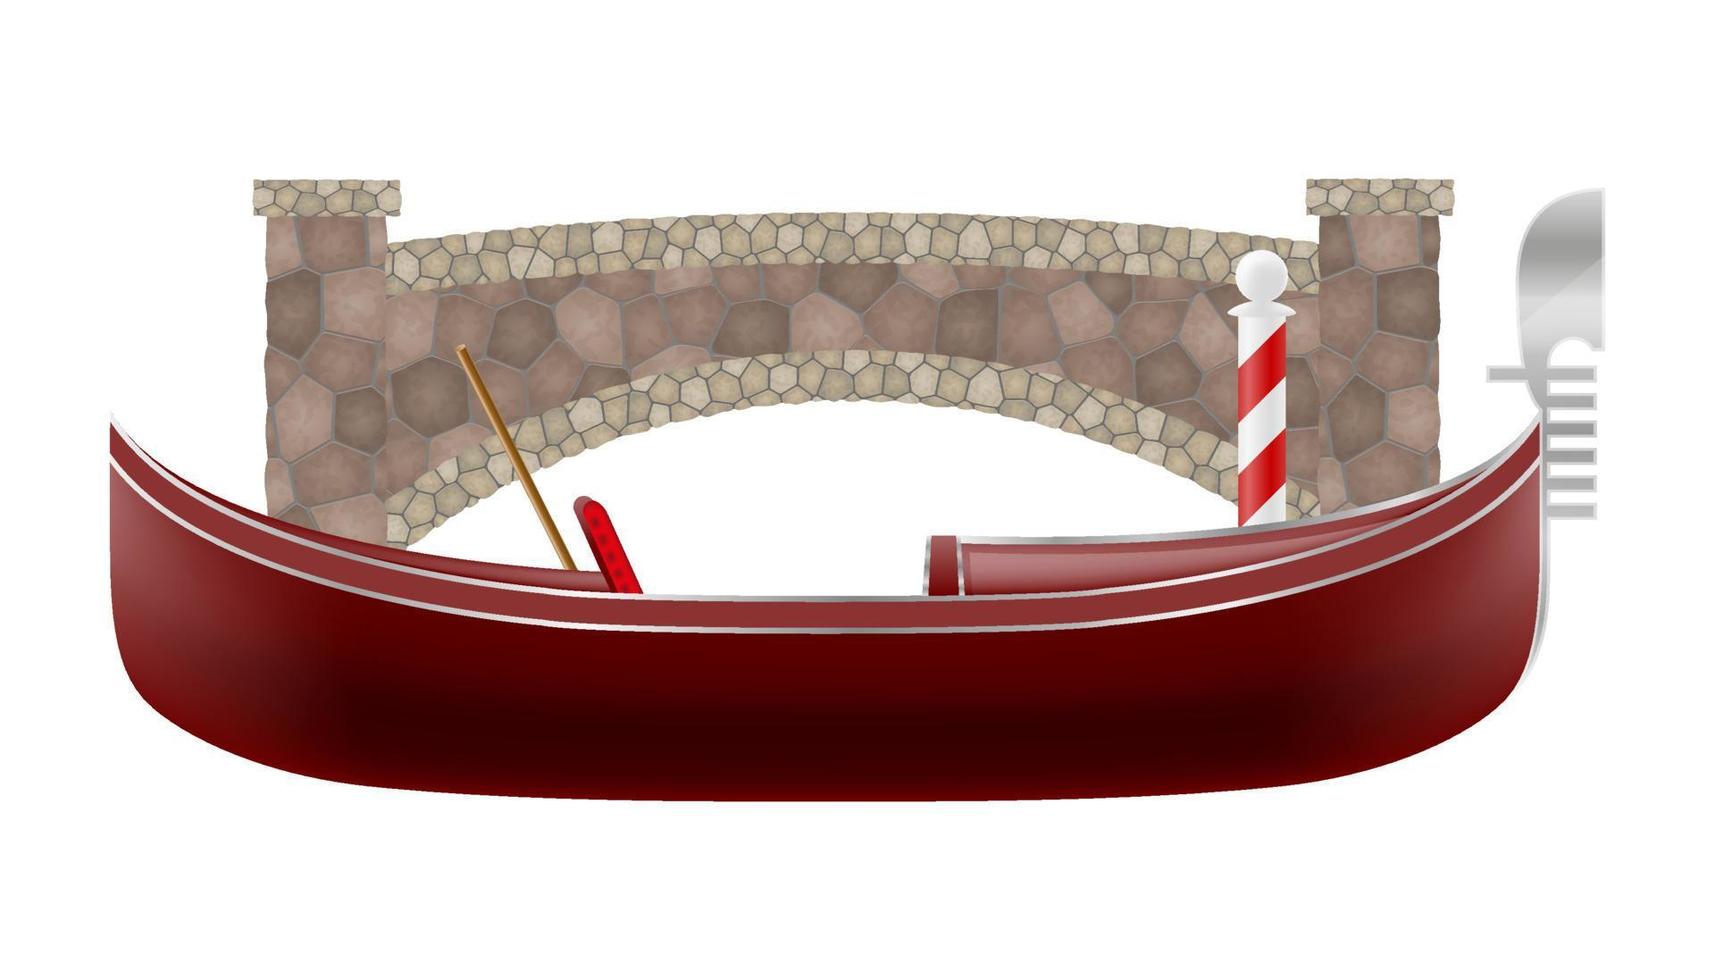 Gondel traditionelles italienisches Boot in Venedig-Vektor-Illustration isoliert auf weißem Hintergrund vektor